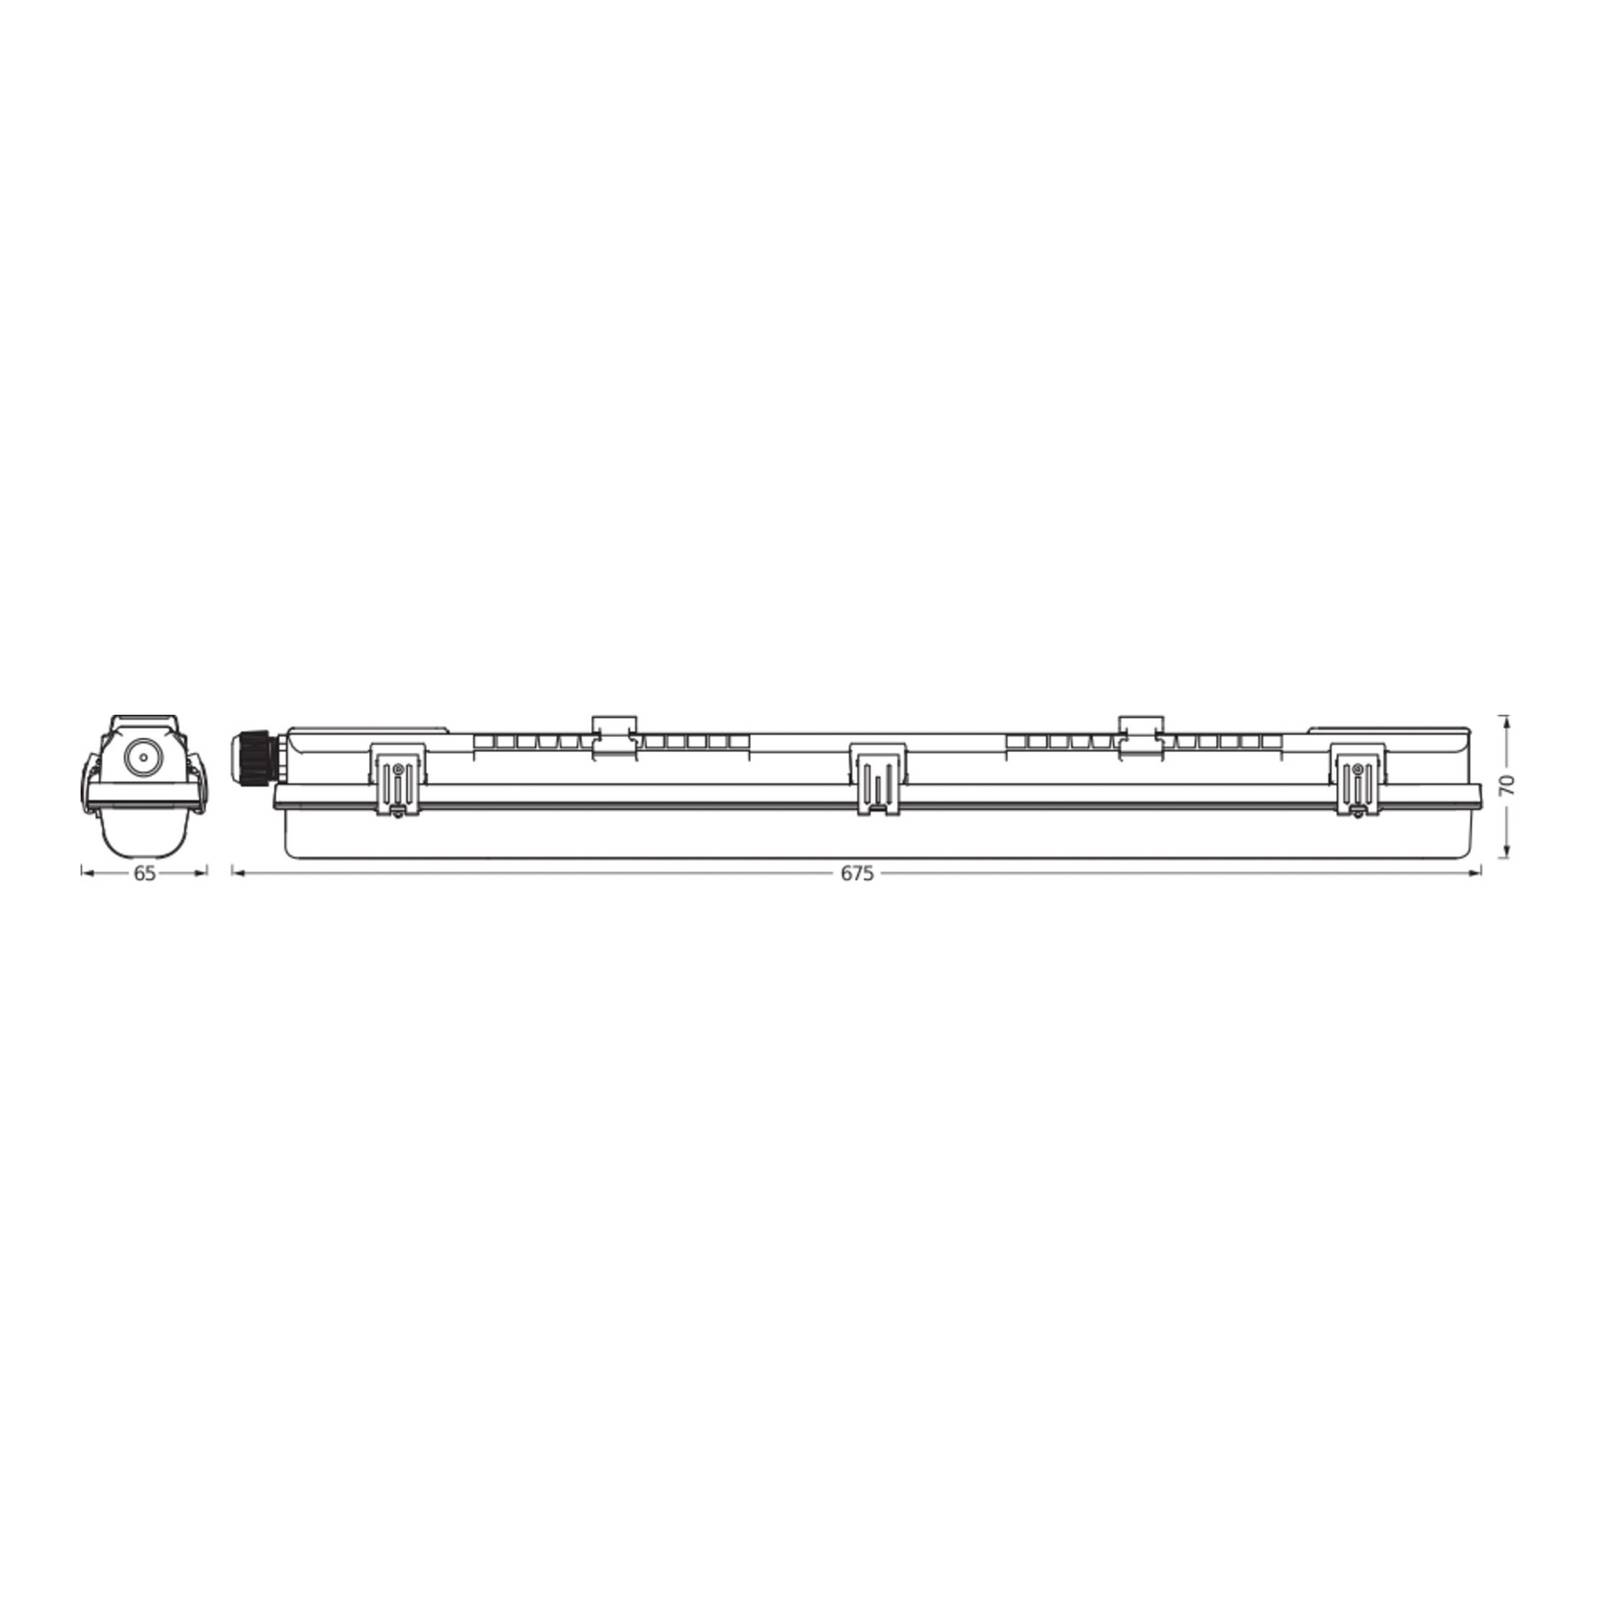 LEDVANCE Luminaire pour pièces humides Submarine PCR 60 G13 T8 840 7 W